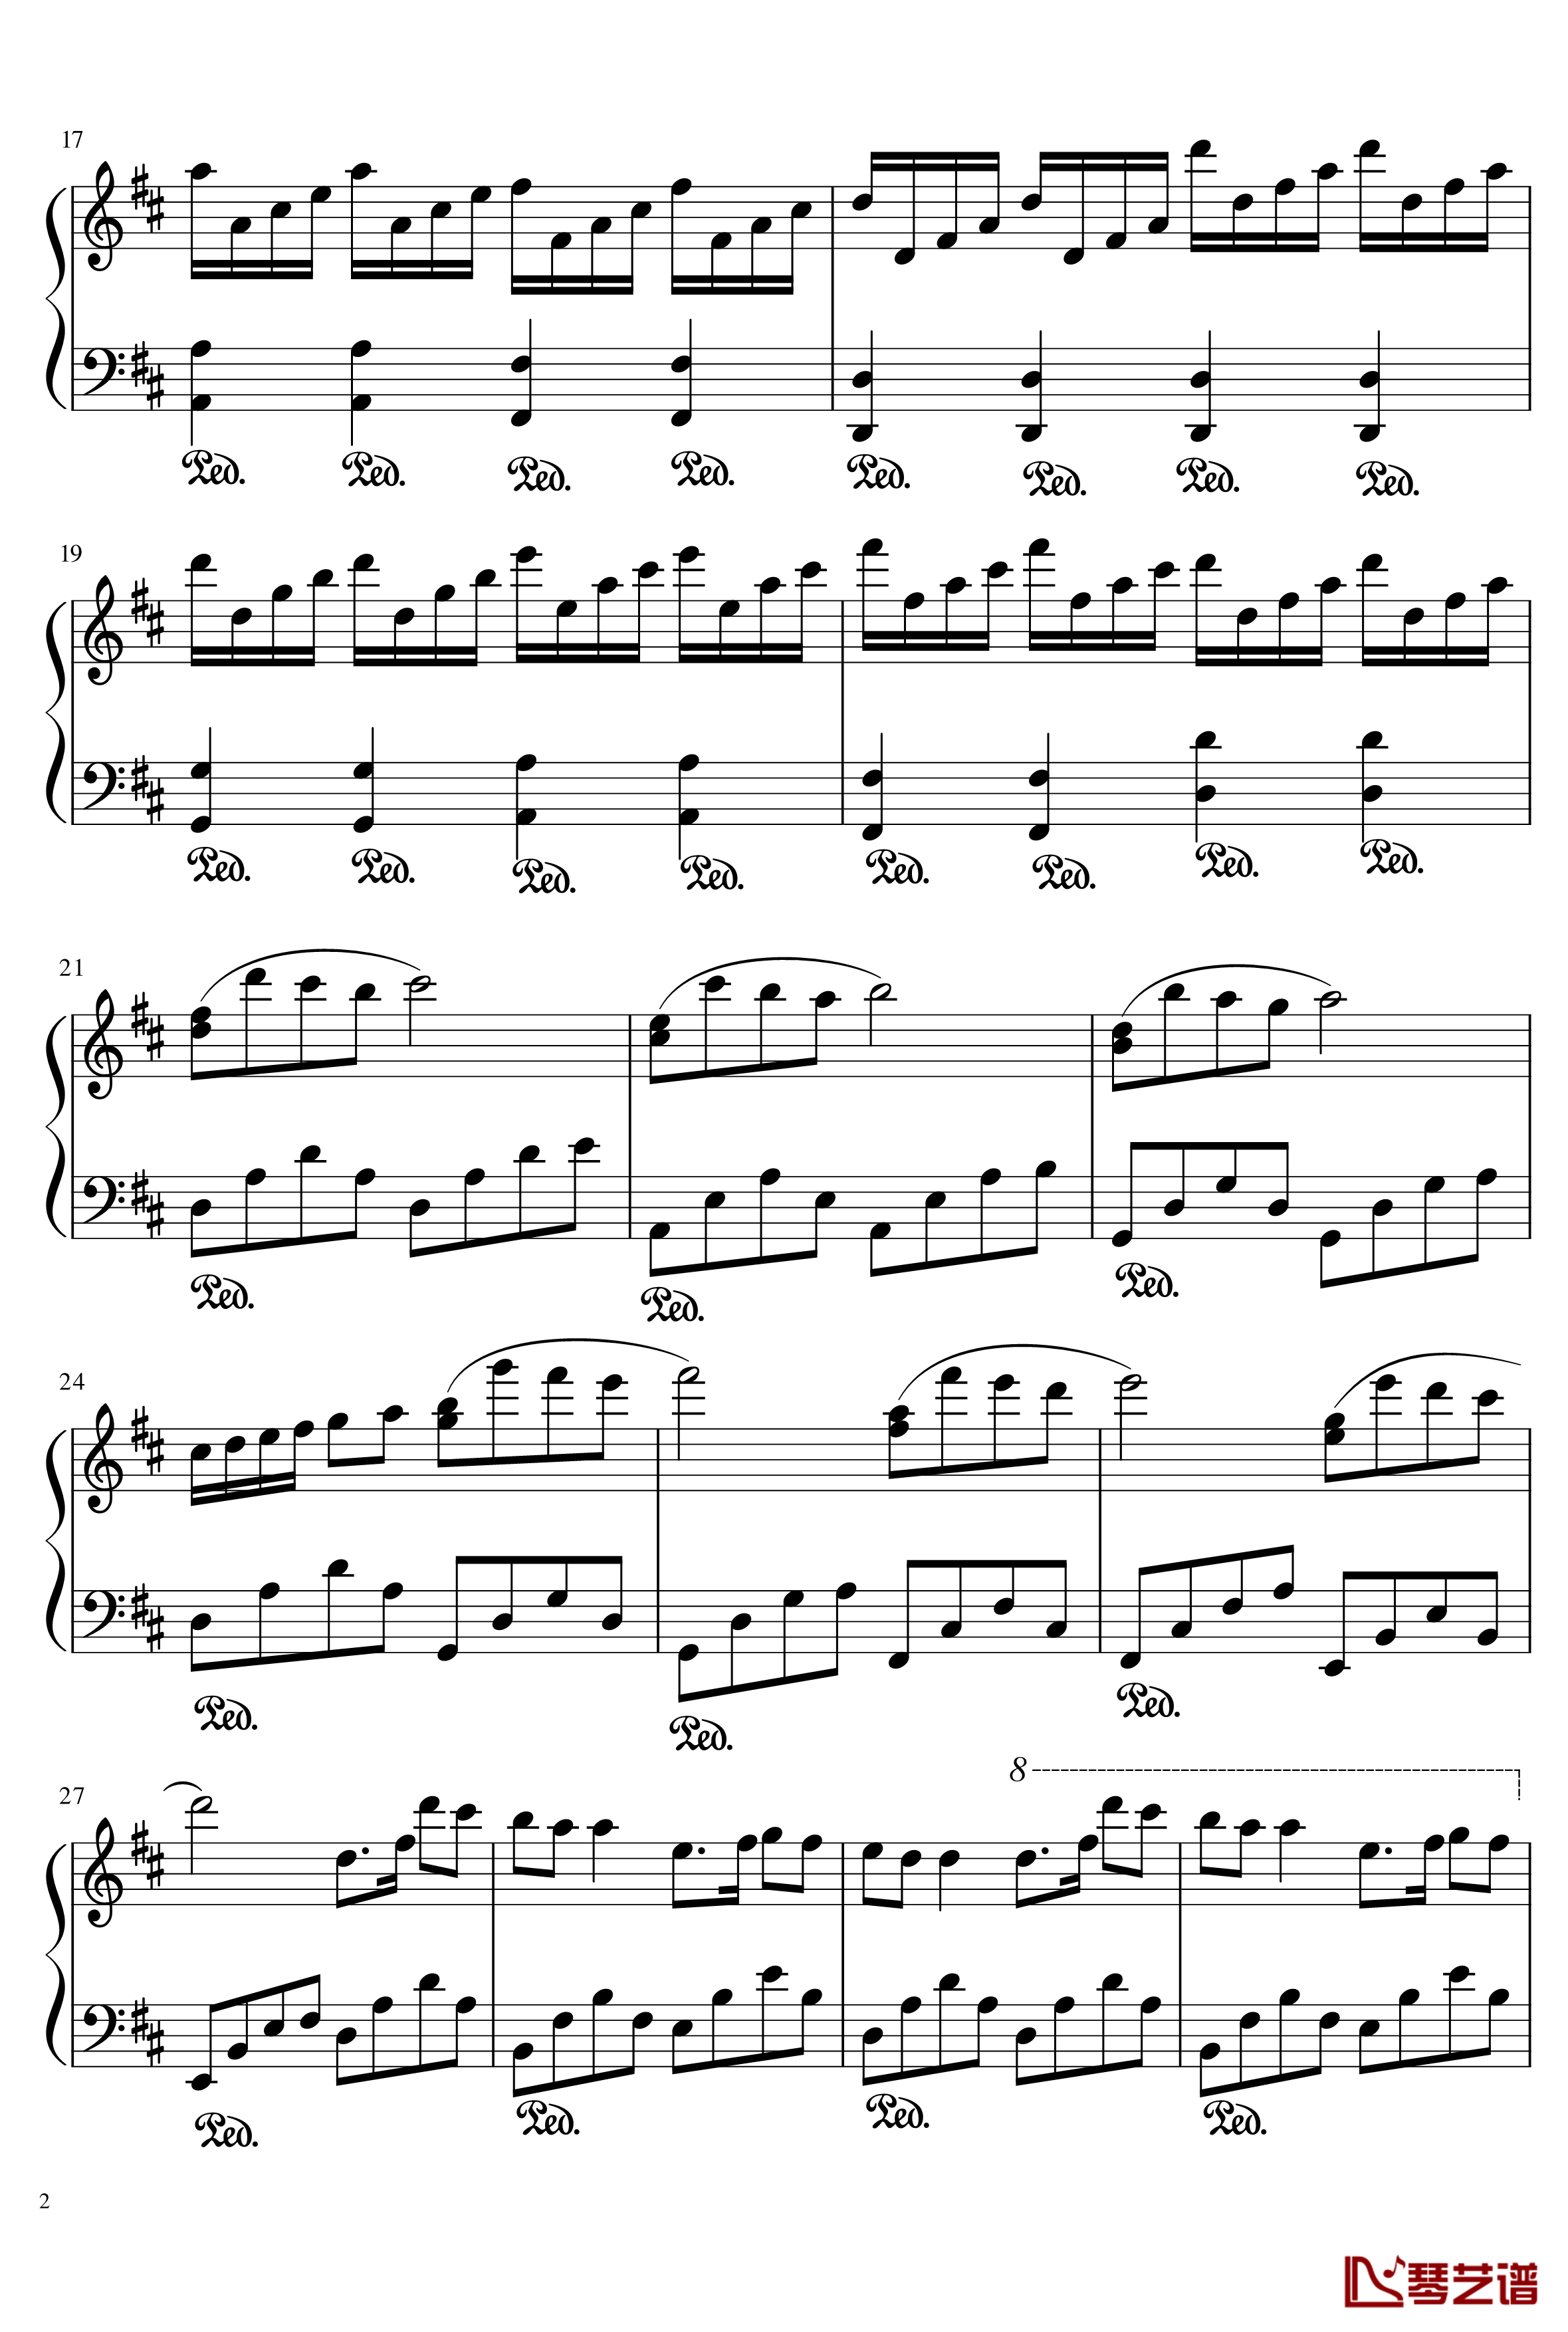 林妙可的旋律钢琴谱-156516370862